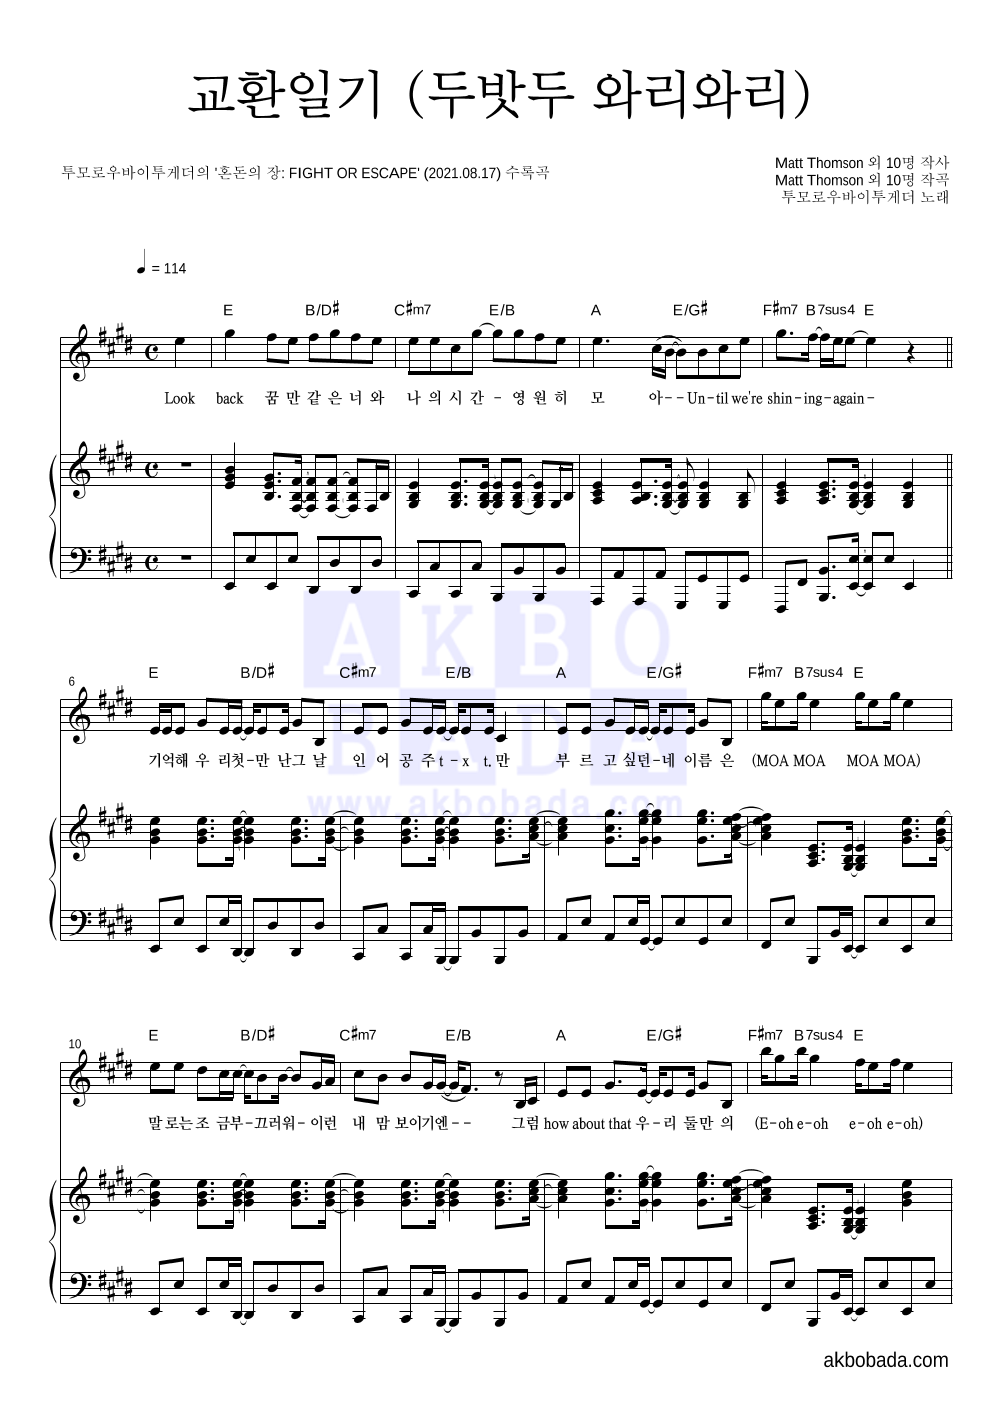 투모로우바이투게더 - 교환일기 (두밧두 와리와리) 피아노 3단 악보 